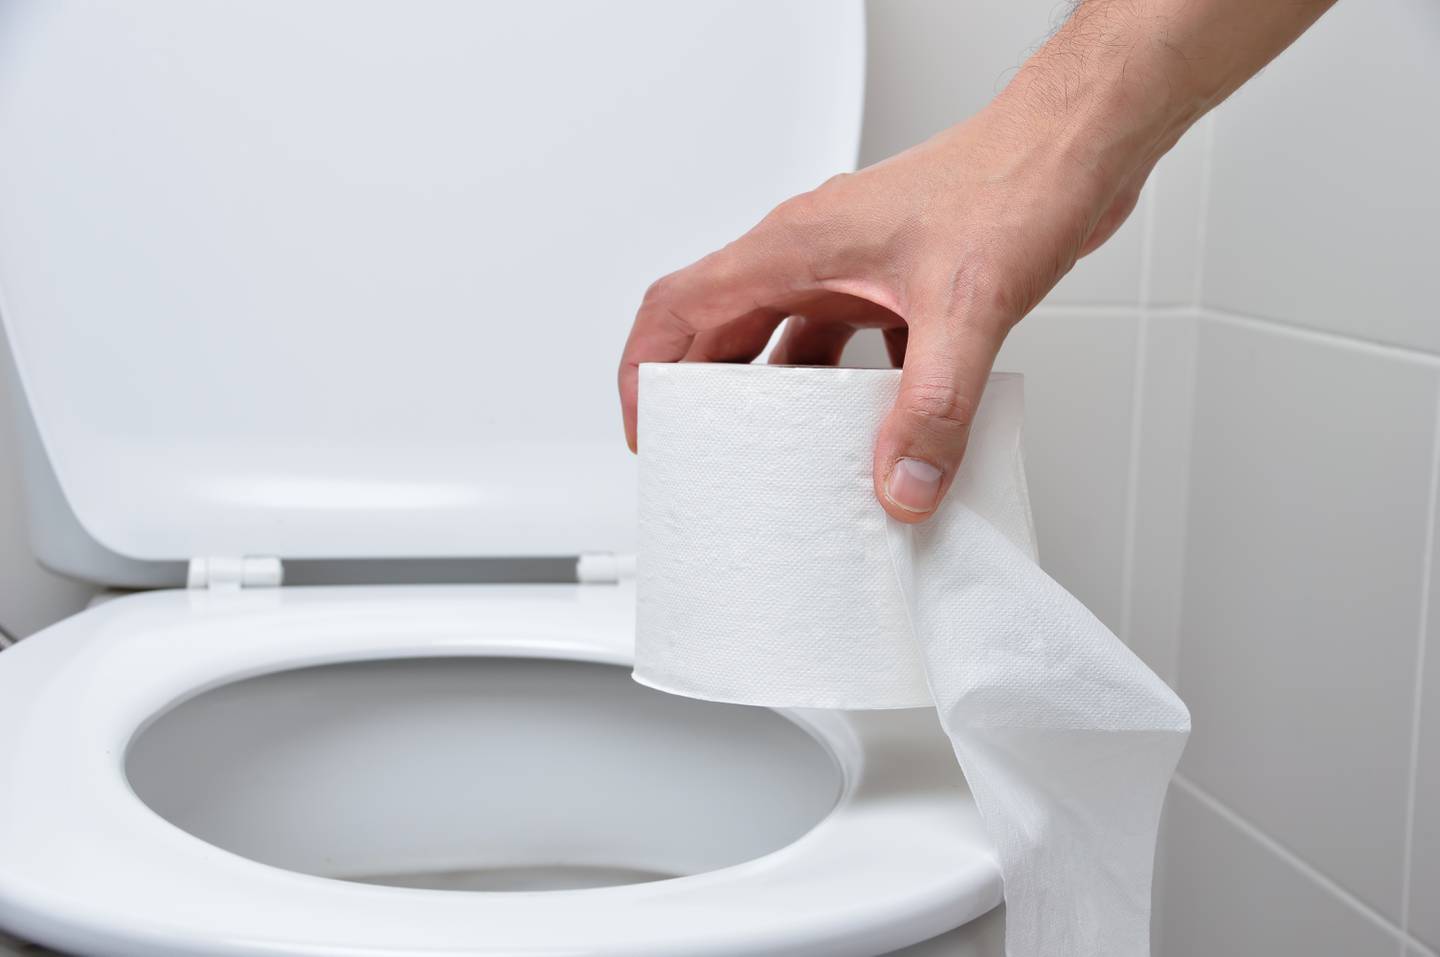 La taza o el ¿dónde tirar el papel higiénico para mejorar la salud? – Metro World News